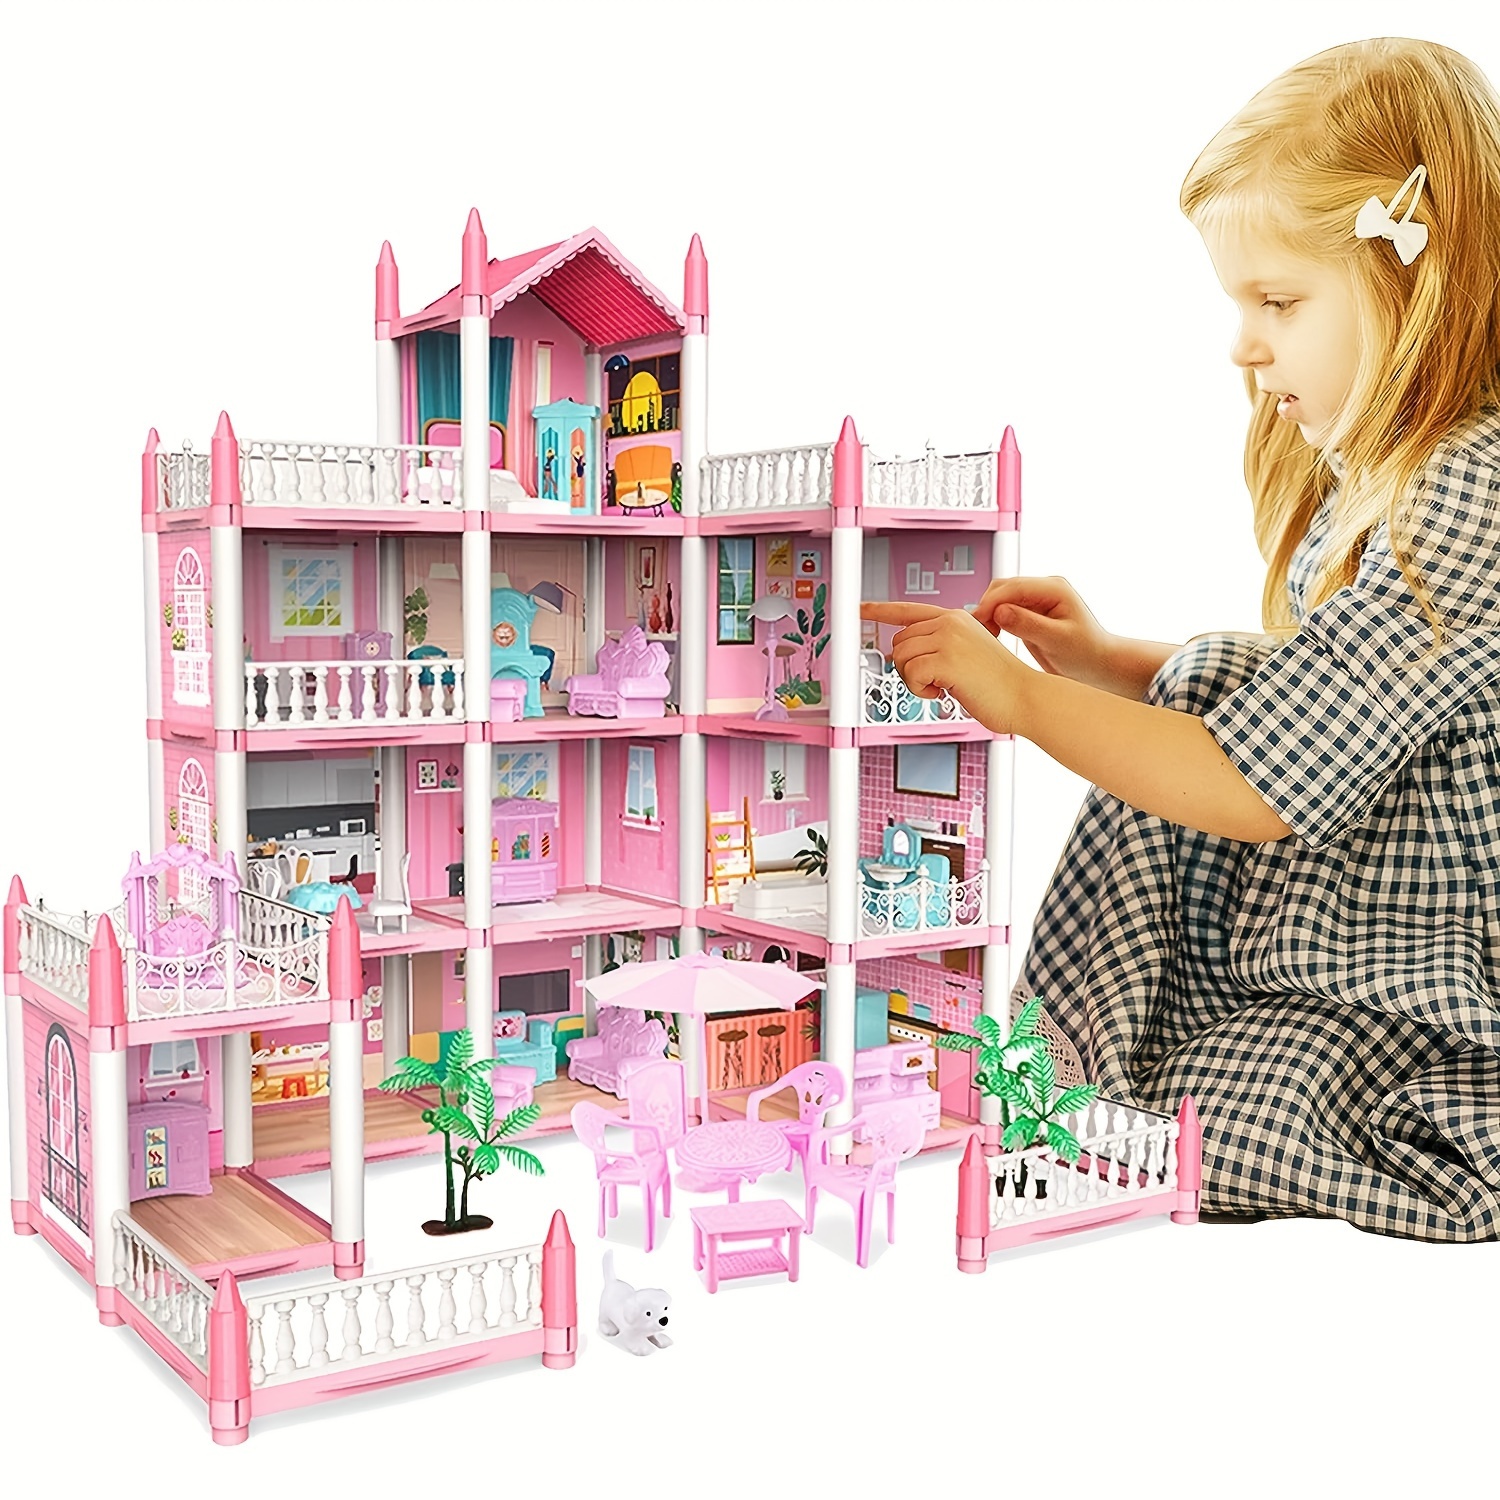 Tienda juegos casitas para niños niñas juguetes regalos 3,5,7,8 años 3pcs